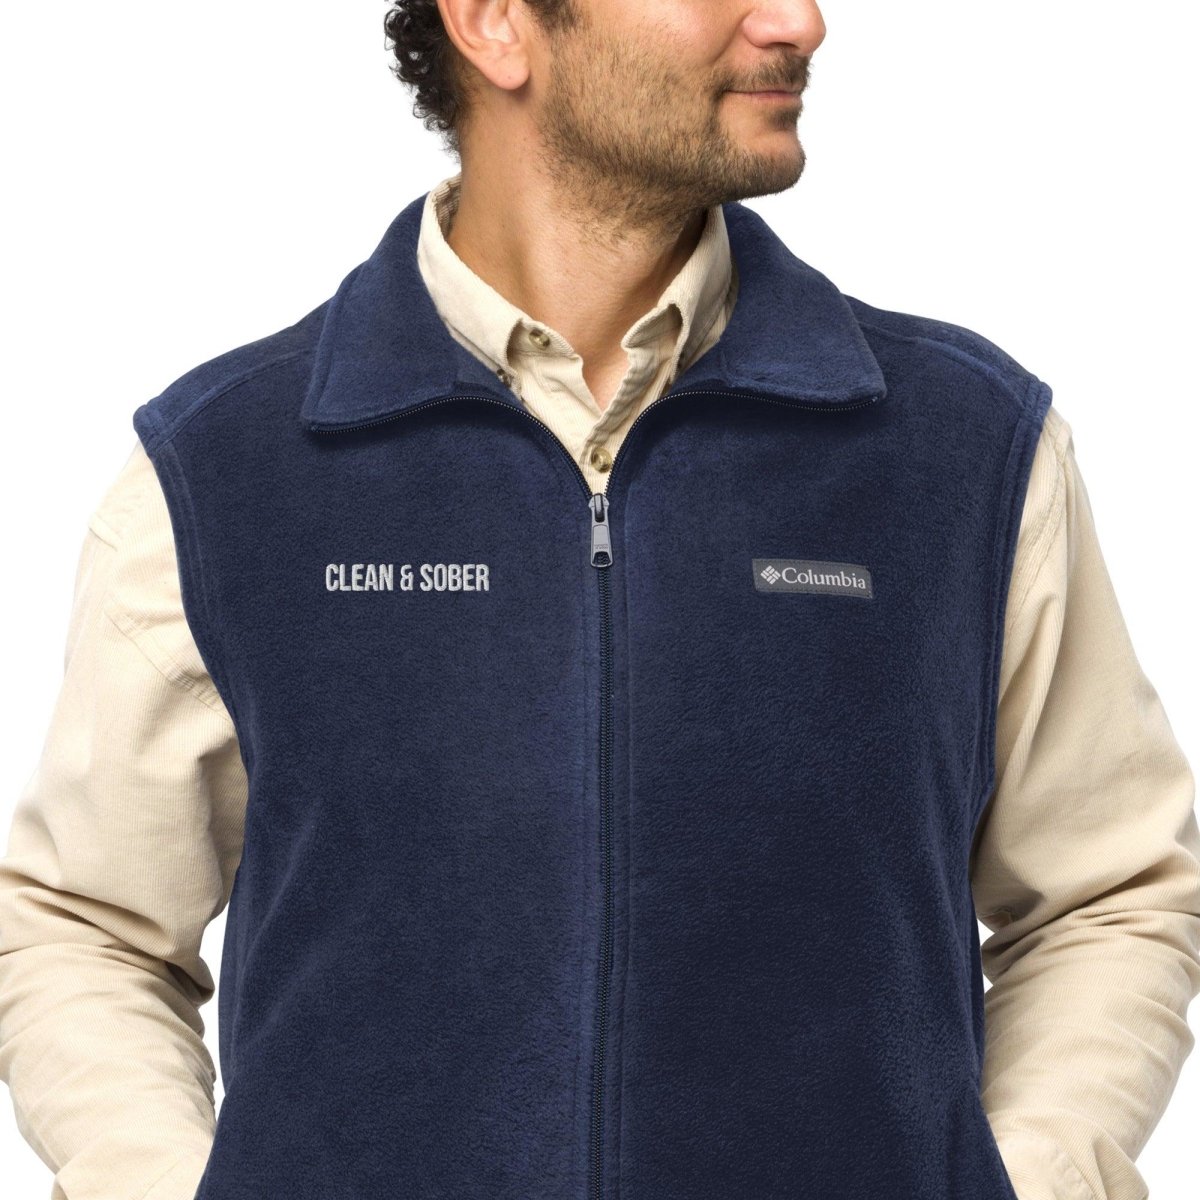 Men’s Columbia fleece vest Clean & Sober - Clean & Sober